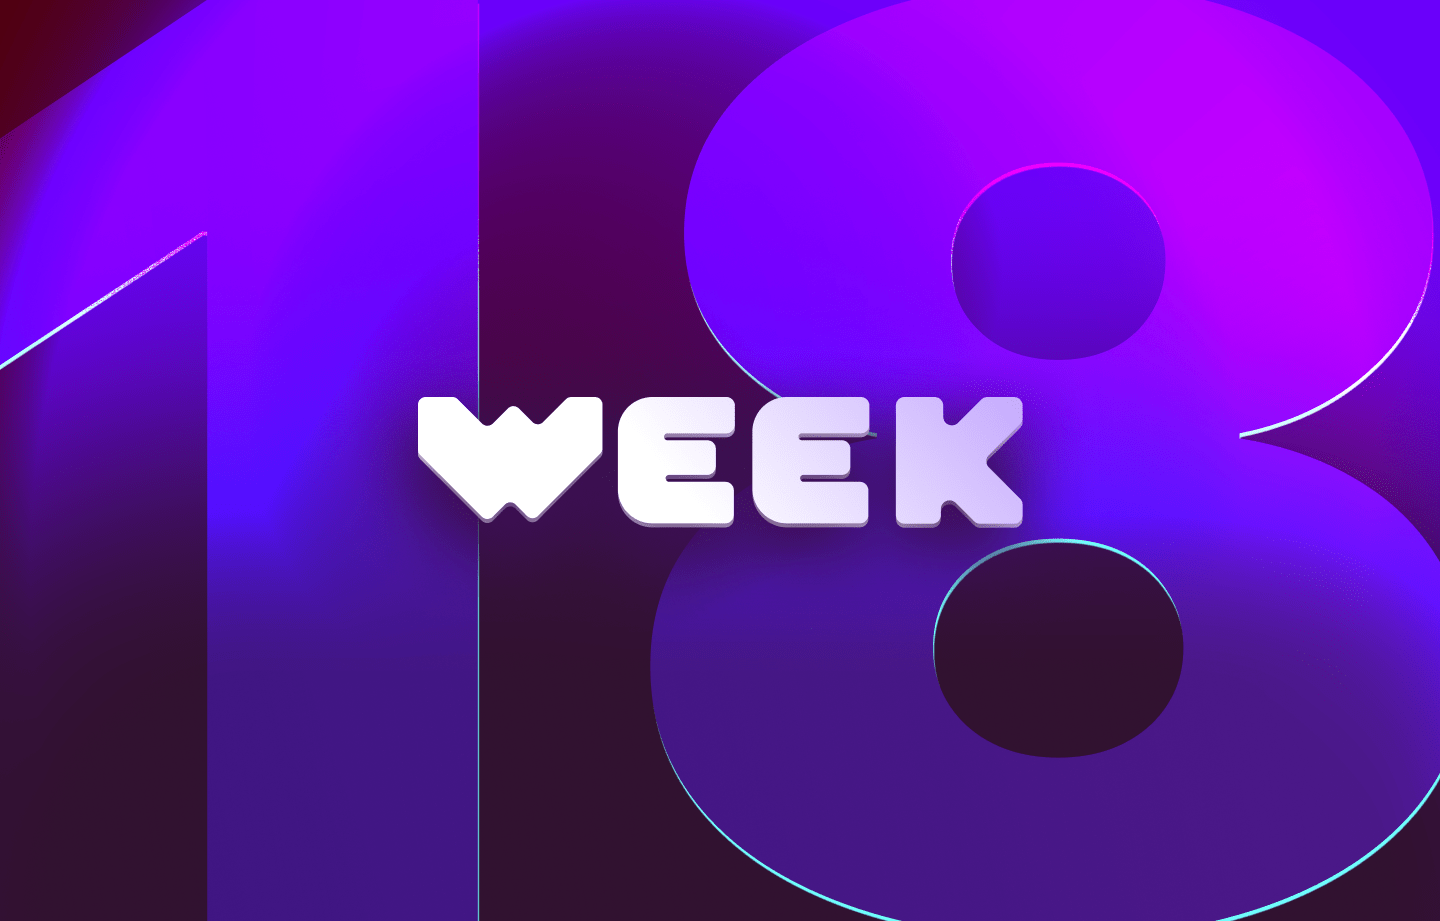 This week in web3 #18